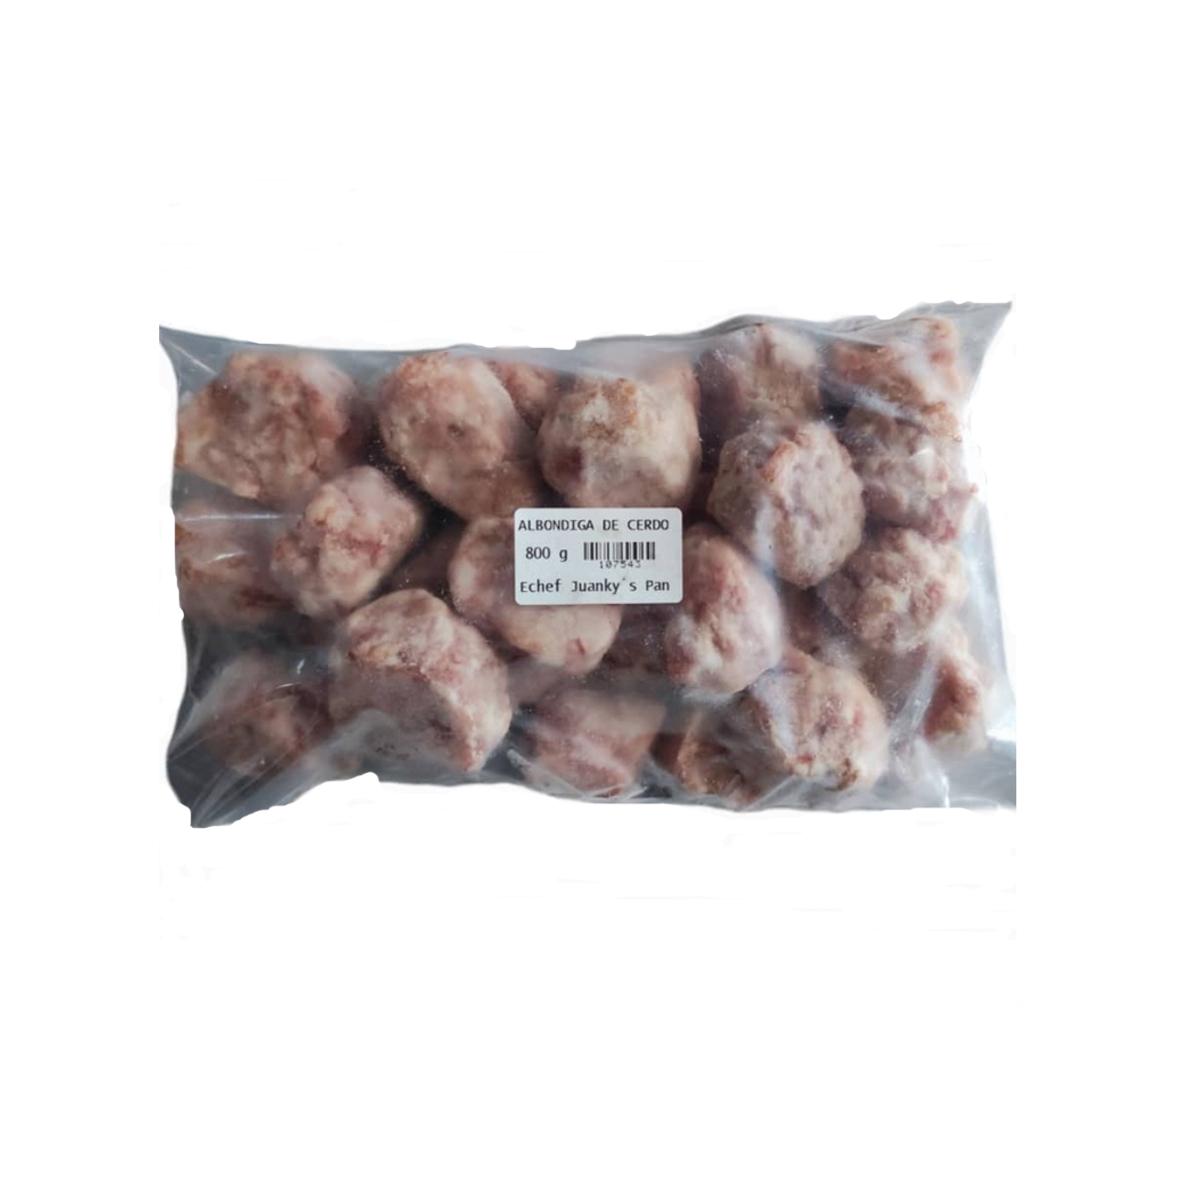 Albóndigas de cerdo (800 g / 1. 76 lb)